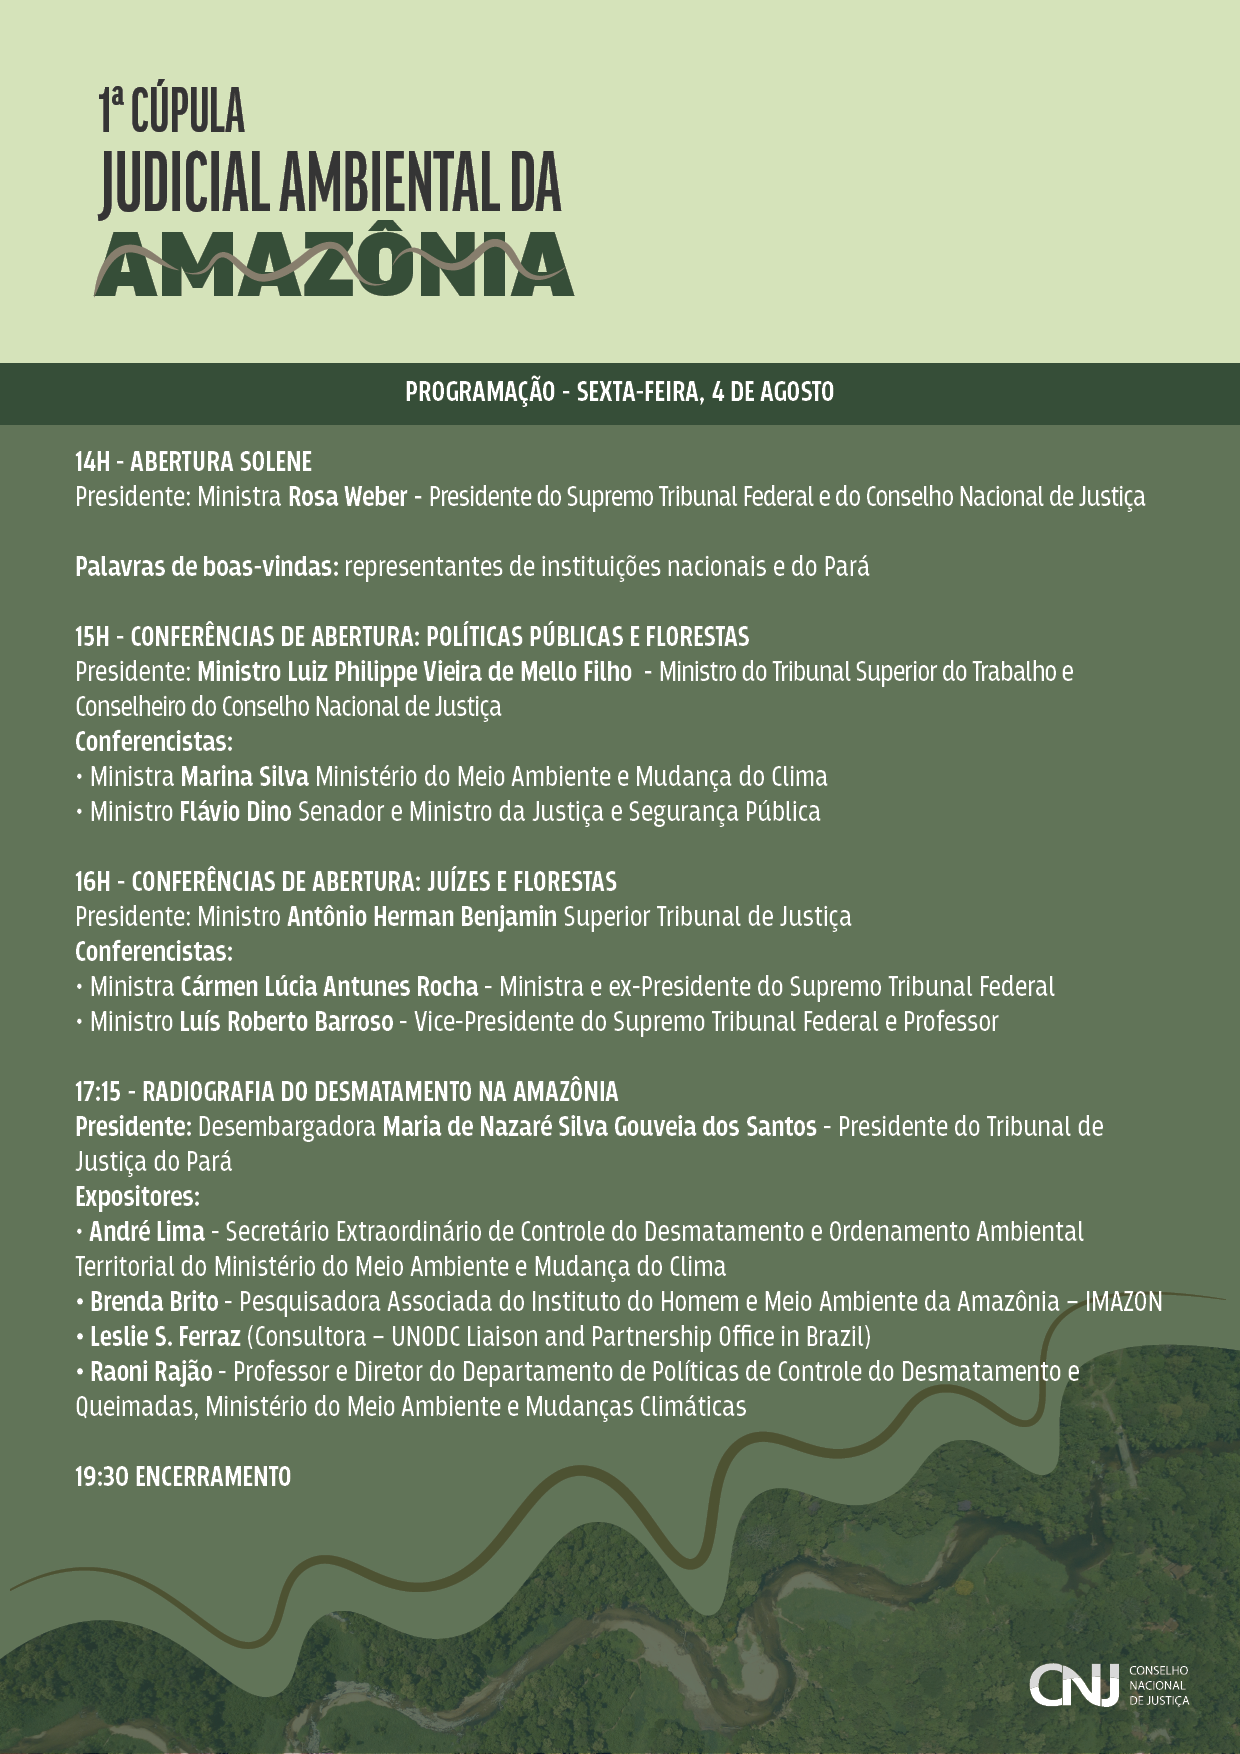 programação do evento: 1ª Cúpula Judicial Ambiental da Amazônia – Juízes e Florestas em formato jpeg. Identidade visual da programação com as informações de horário, temas e seus participantes.